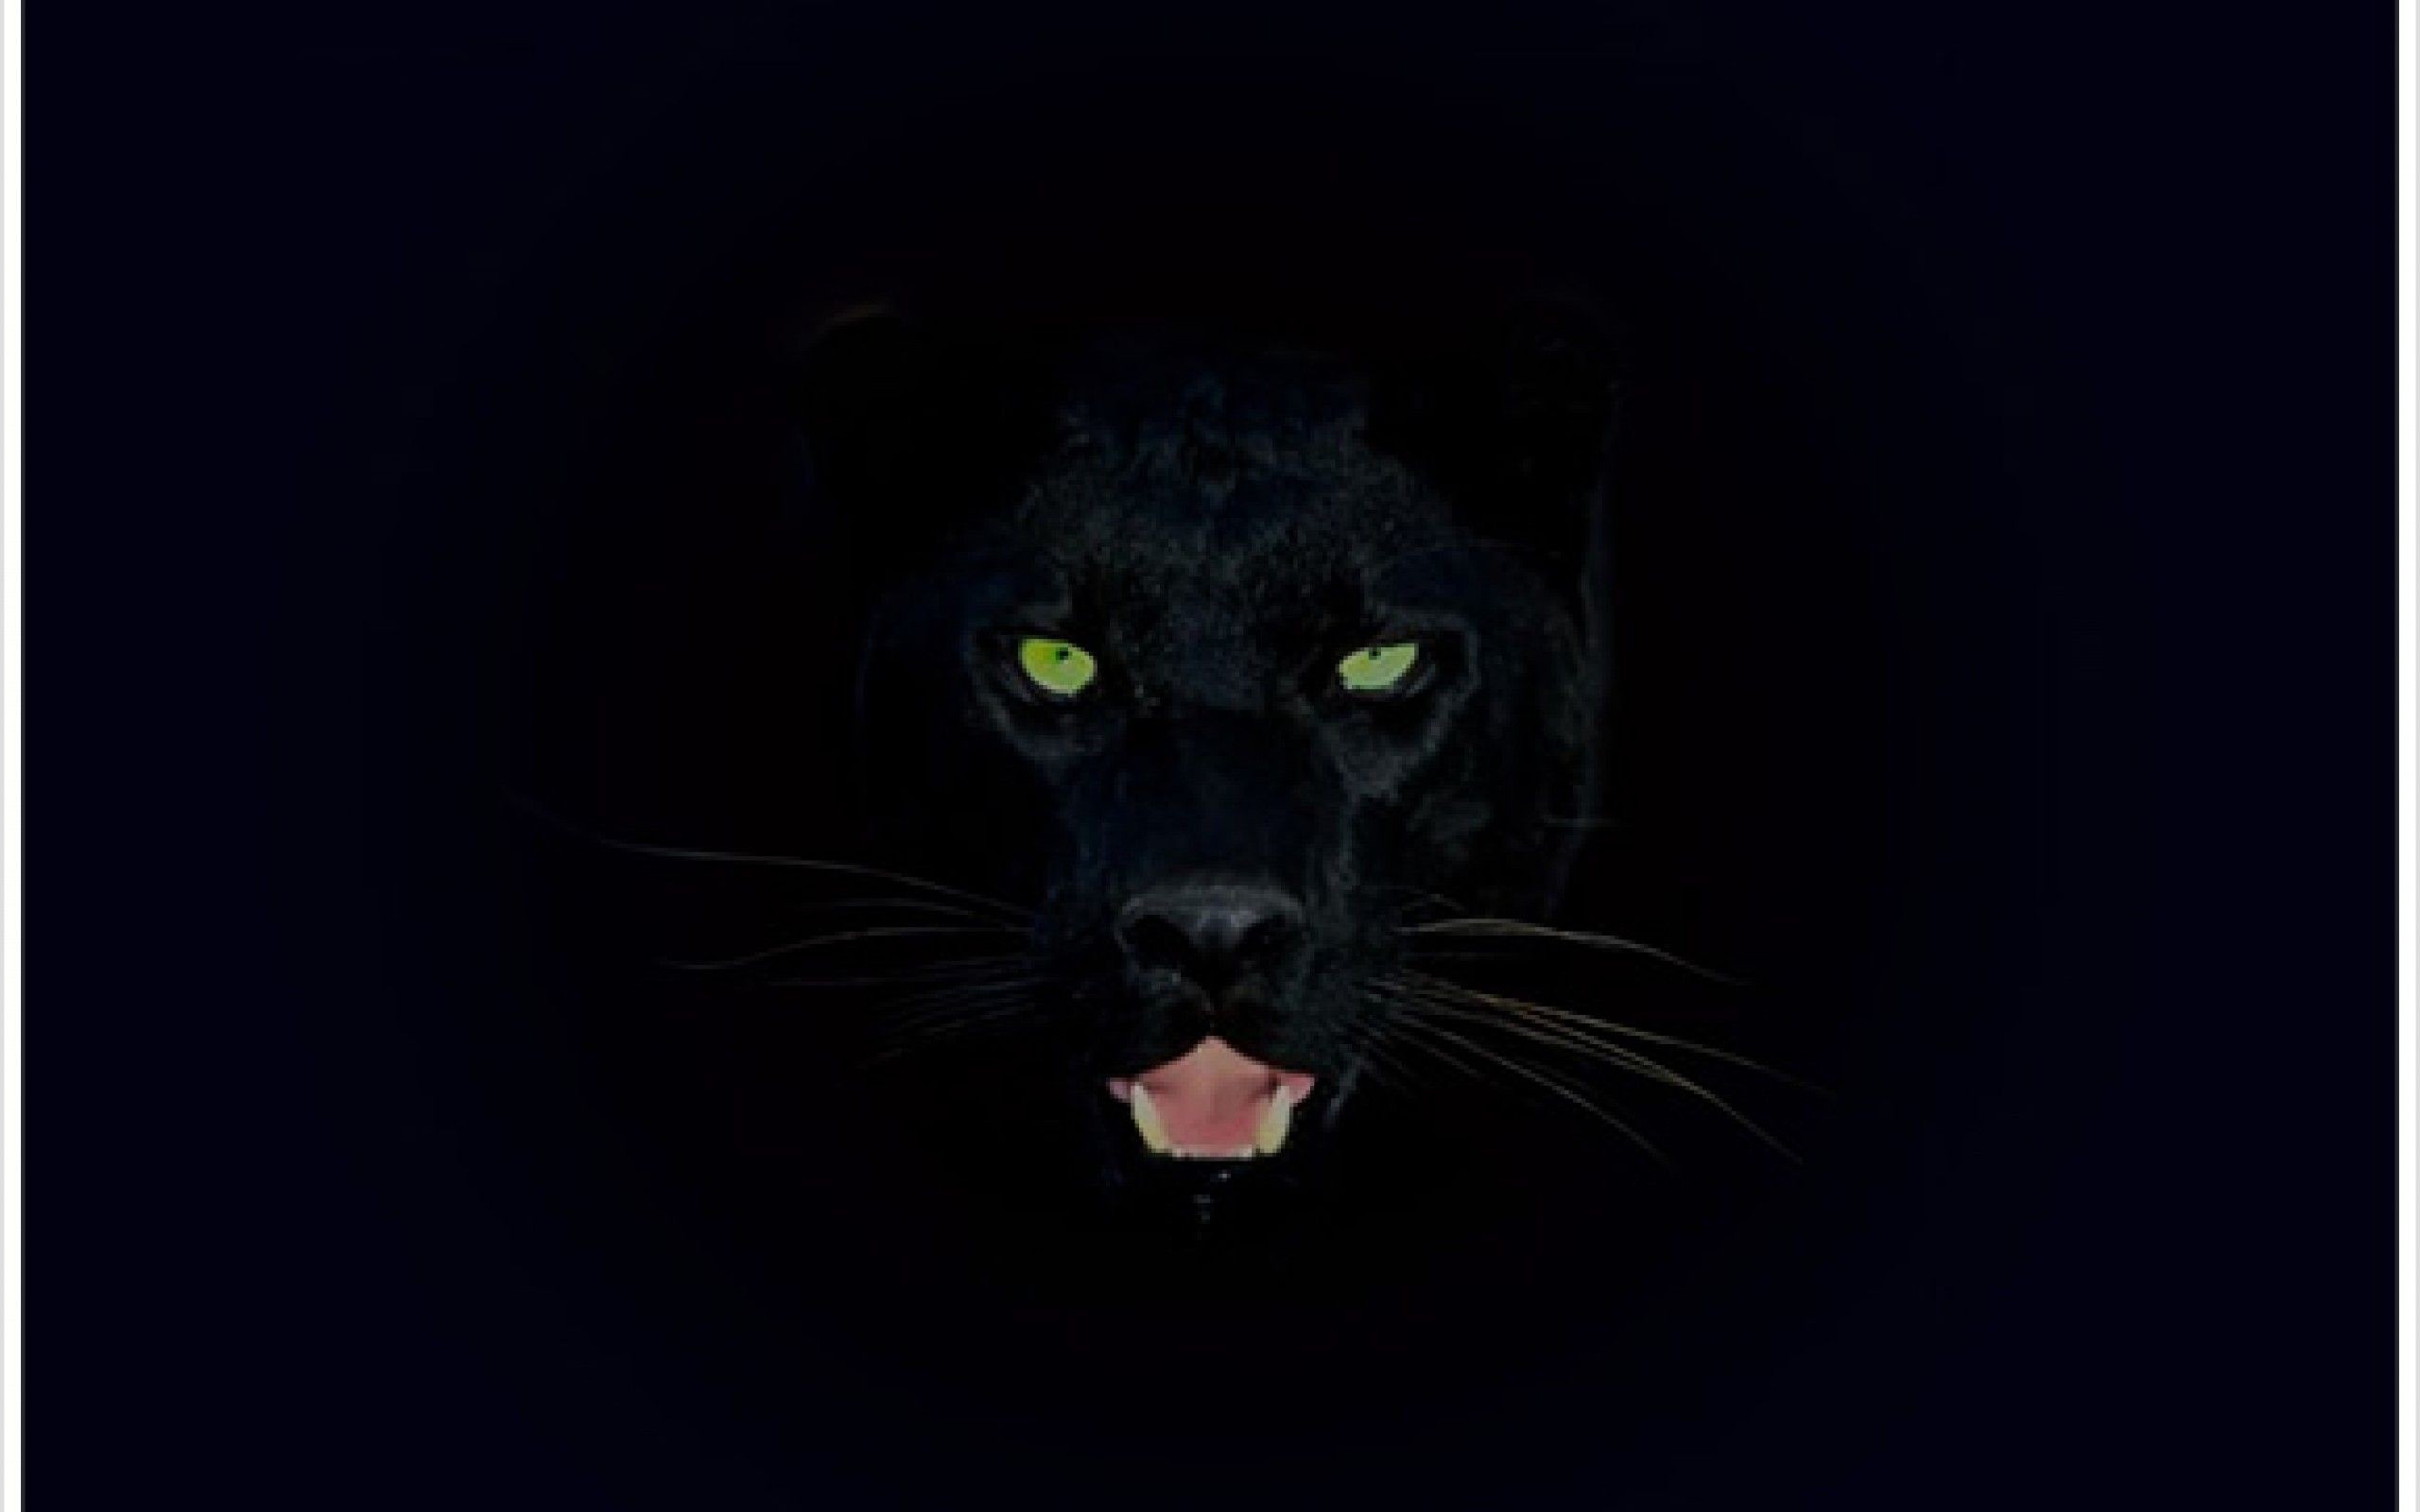 Black Panther wallpaper ·① Download free amazing HD ...